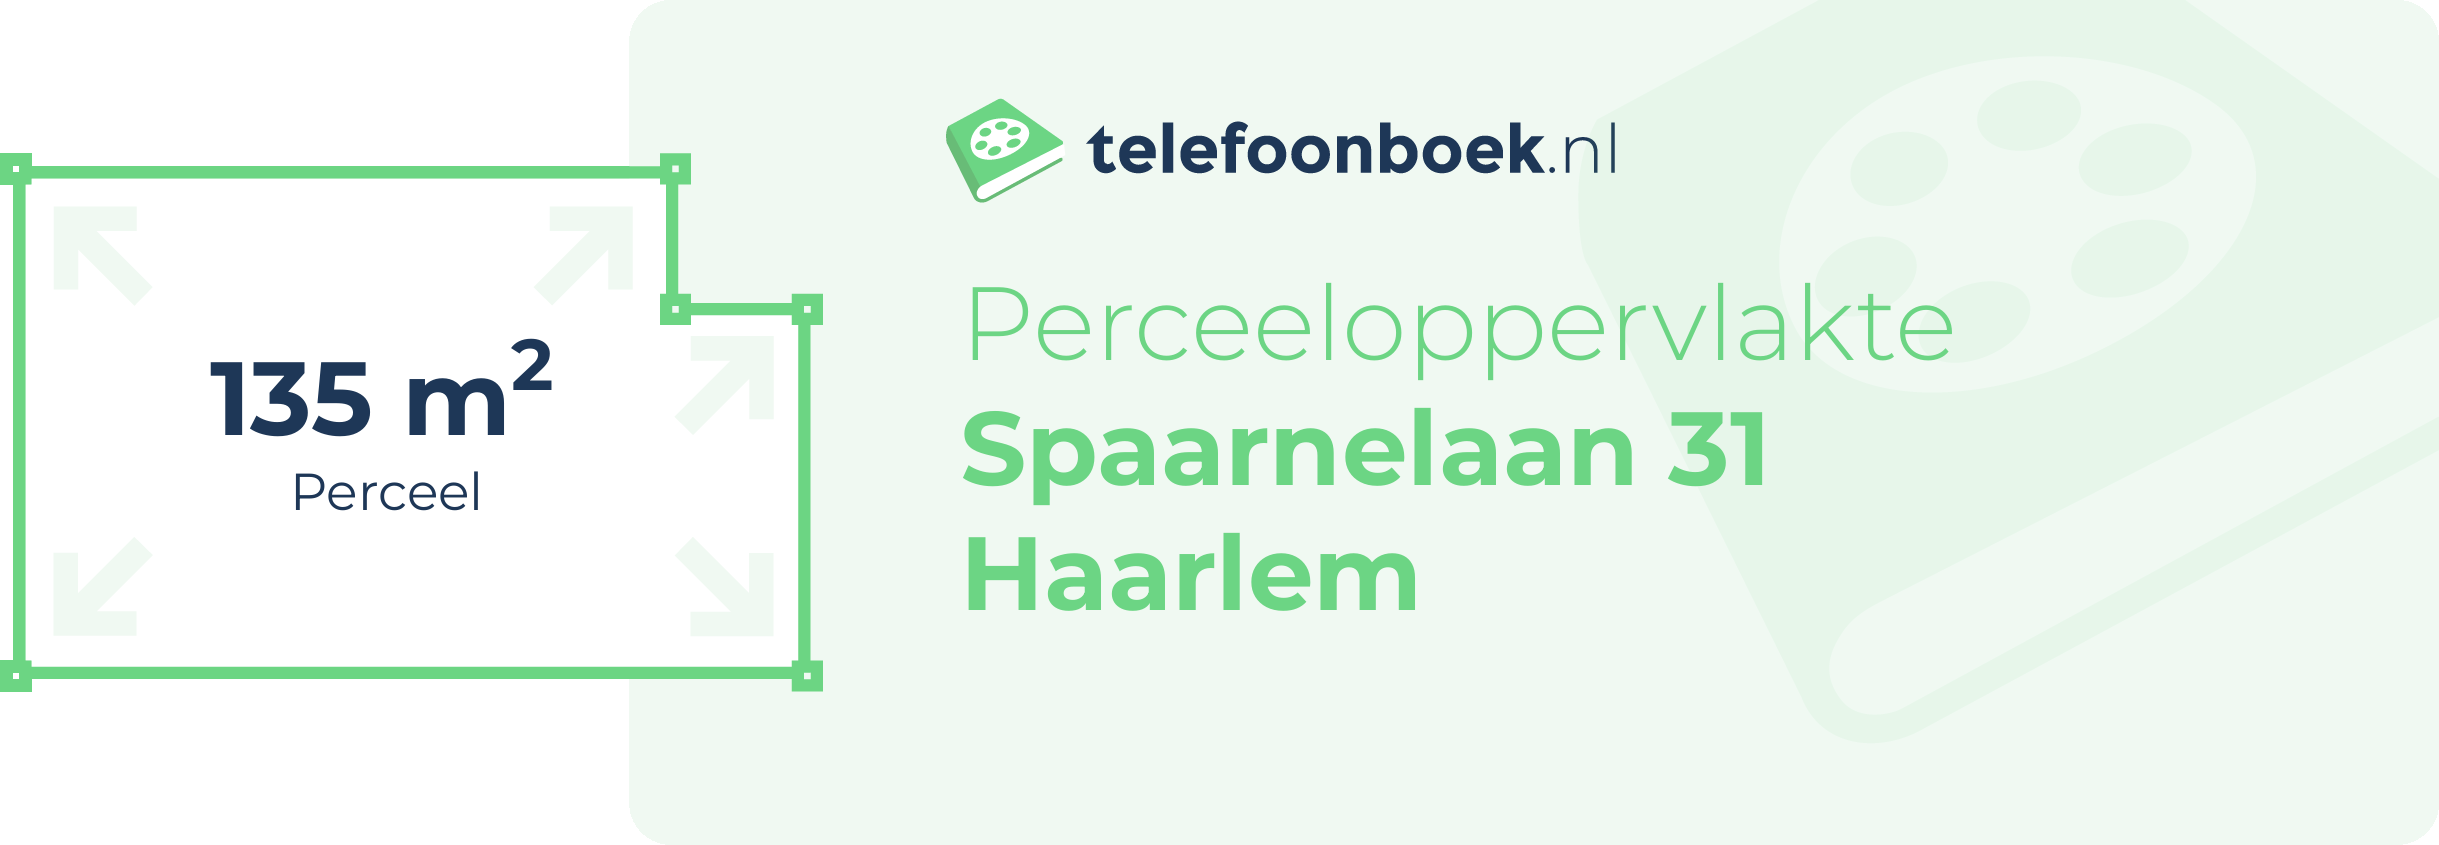 Perceeloppervlakte Spaarnelaan 31 Haarlem